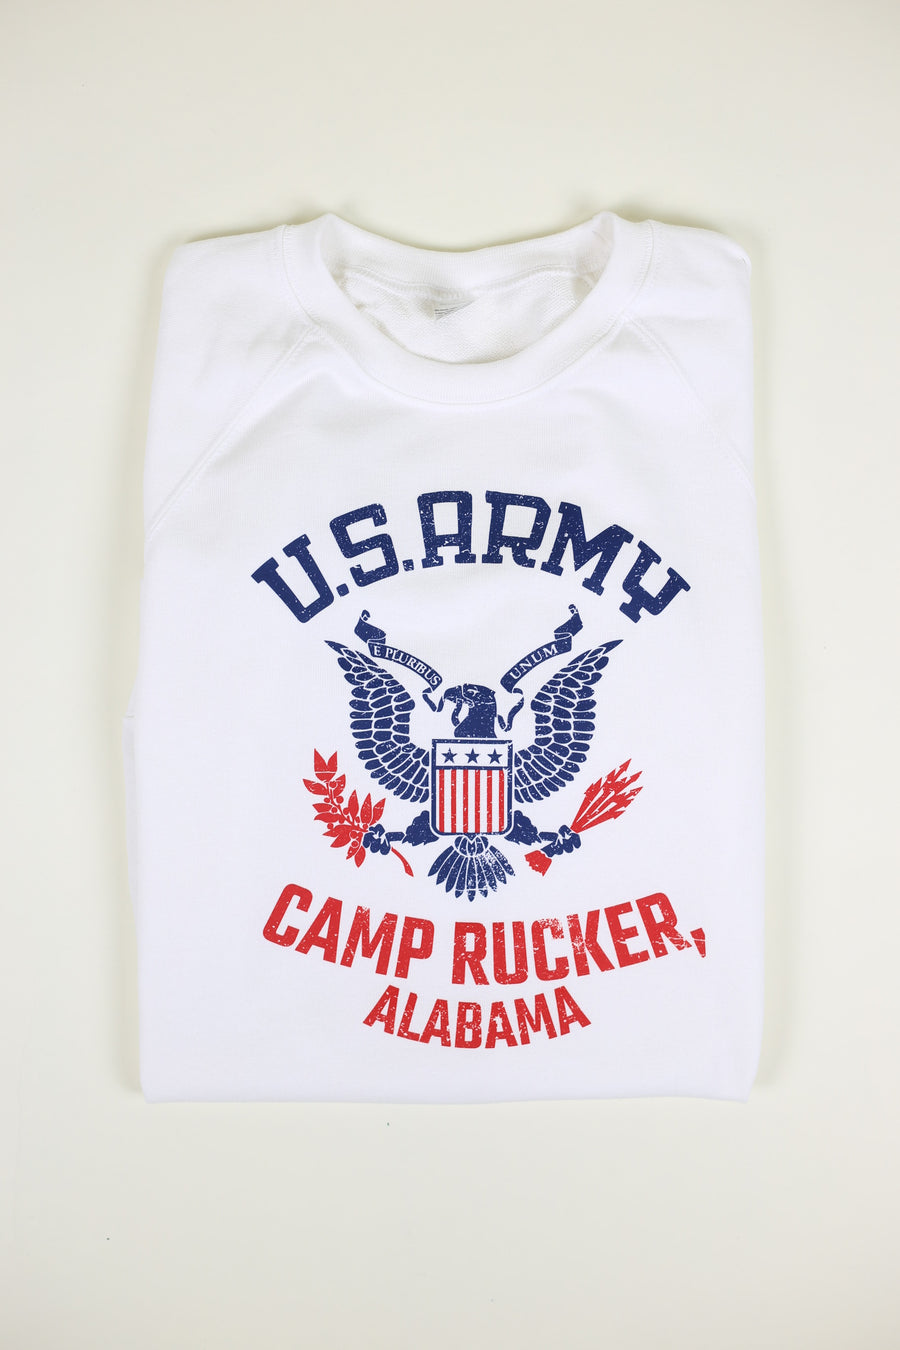 Us Army Camp Rucker half sleeve raglan sweatshirt